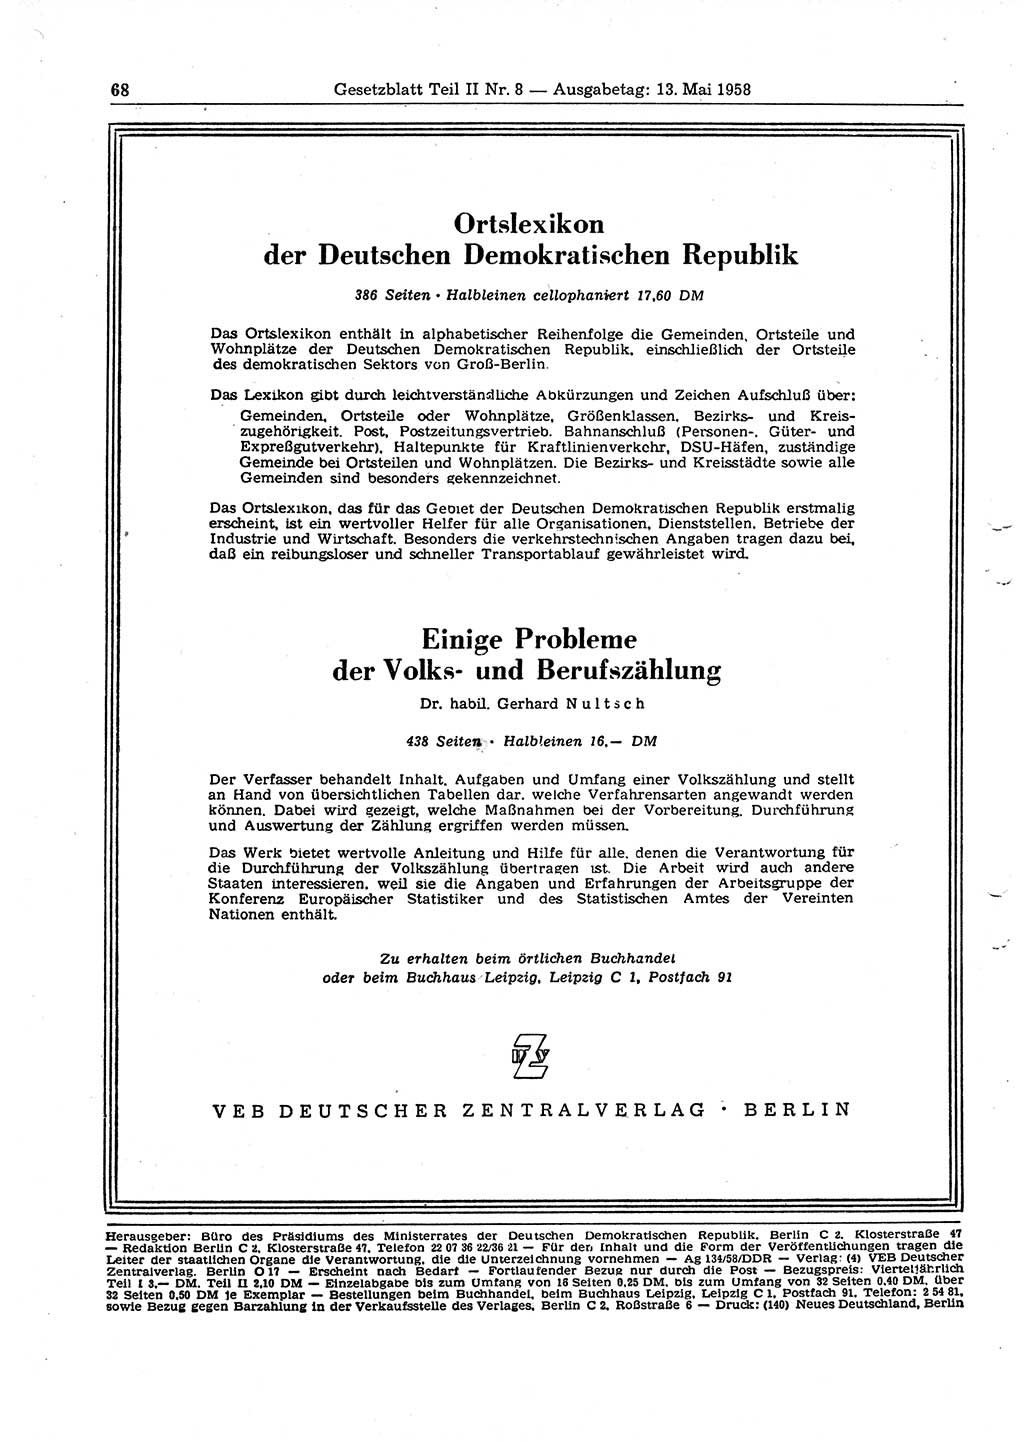 Gesetzblatt (GBl.) der Deutschen Demokratischen Republik (DDR) Teil ⅠⅠ 1958, Seite 68 (GBl. DDR ⅠⅠ 1958, S. 68)